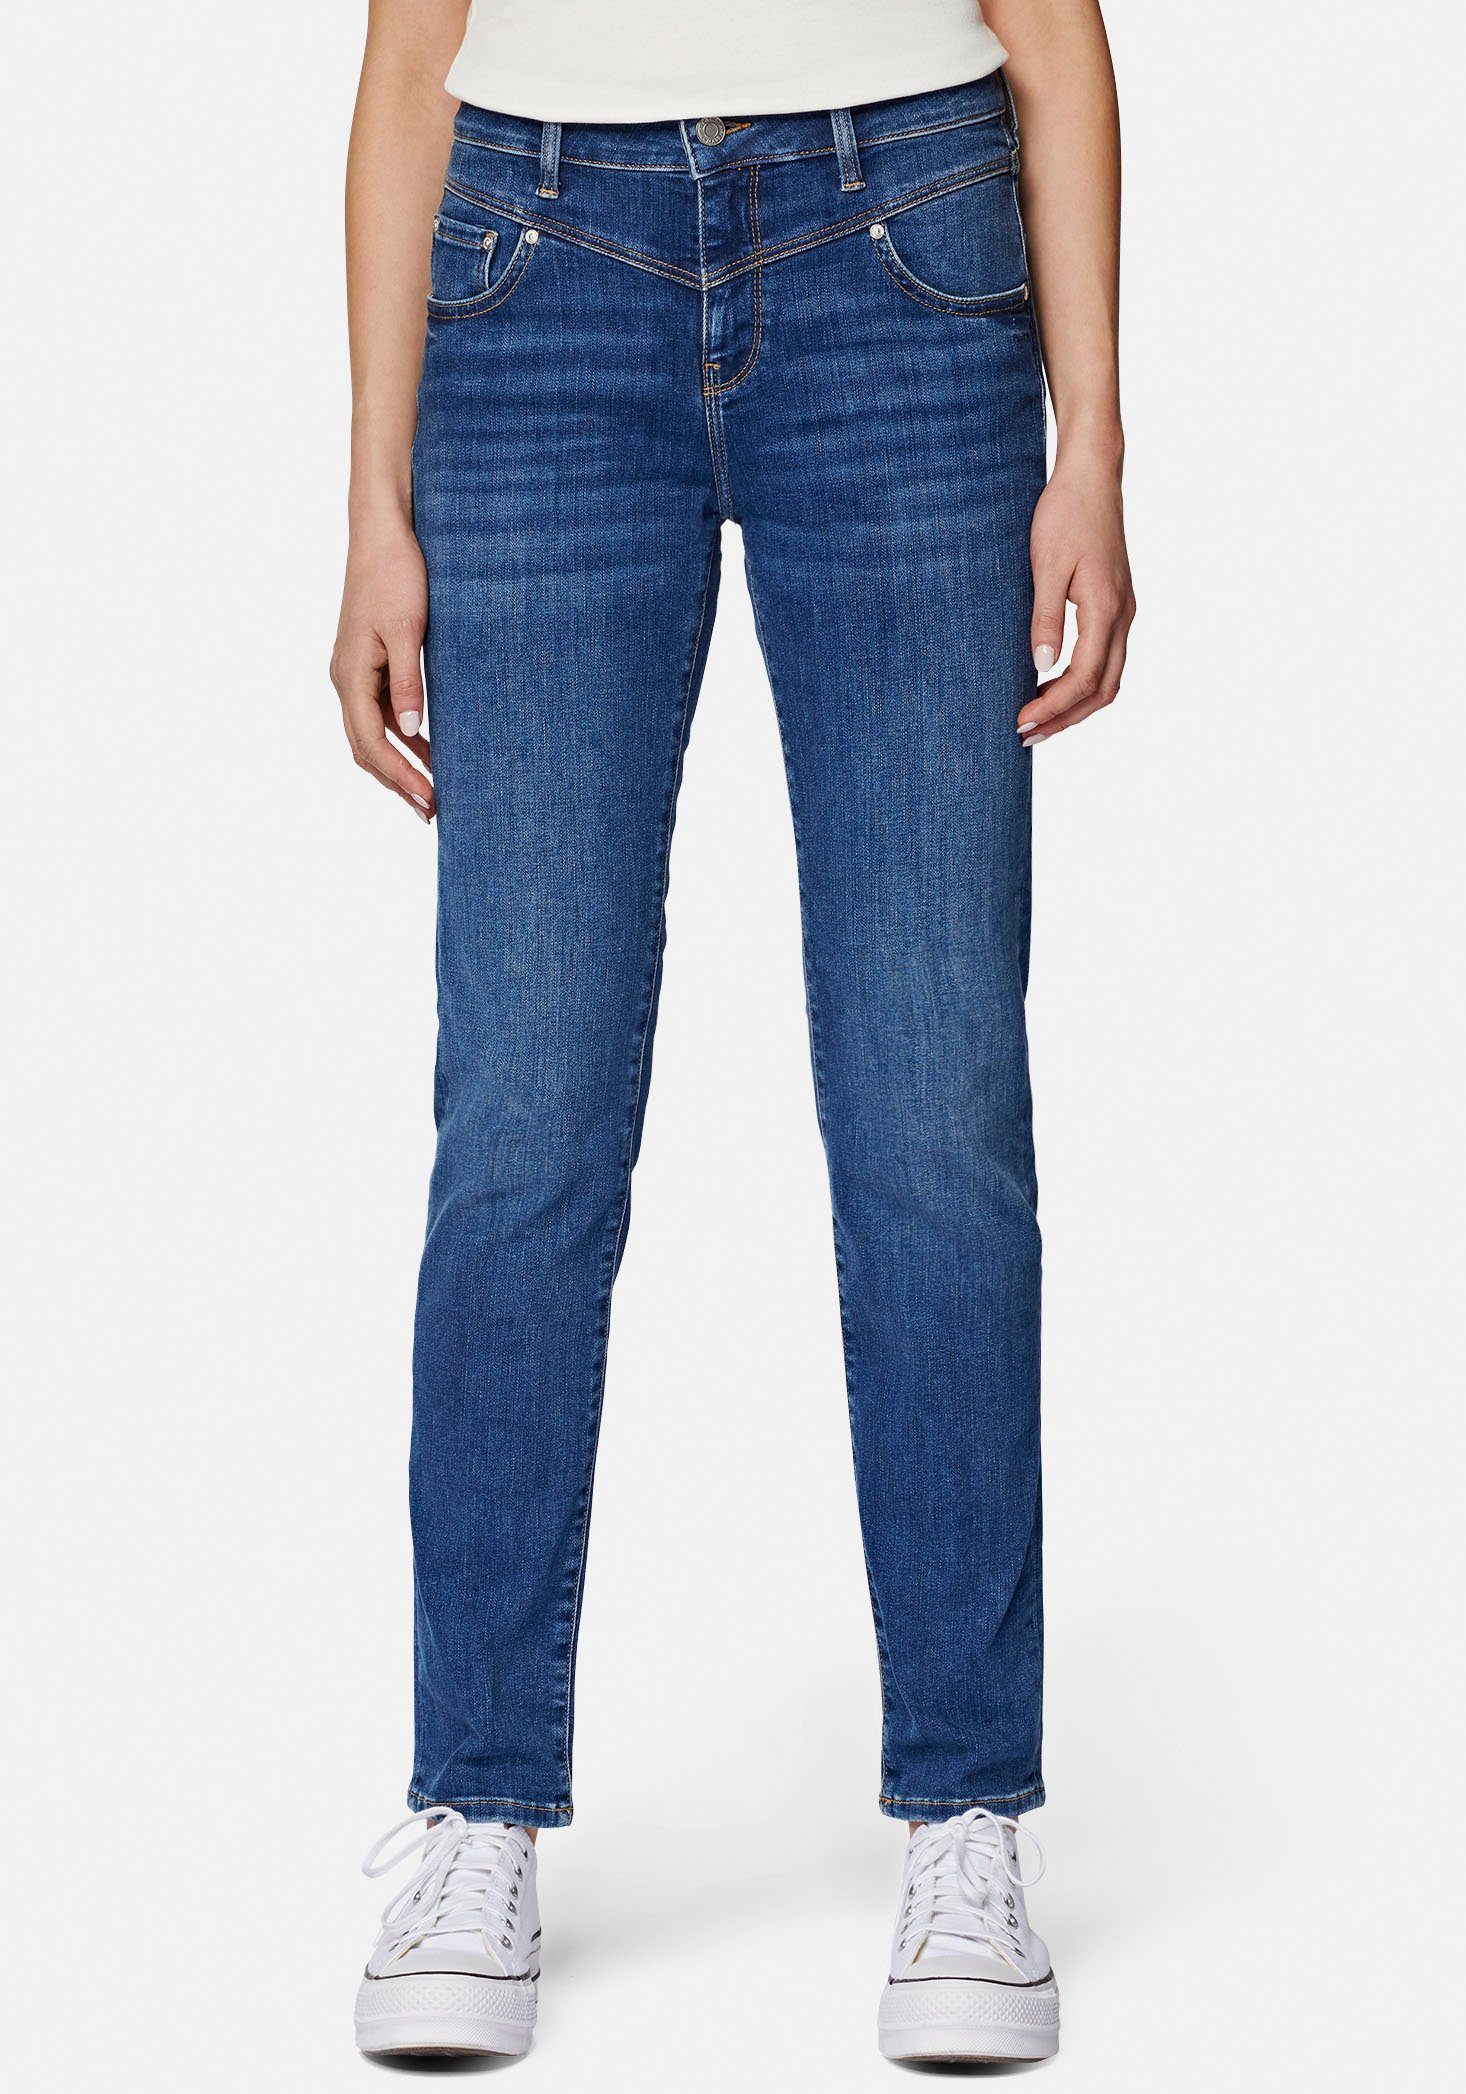 Mavi Slim-fit-Jeans trageangenehmer Stretchdenim dank hochwertiger Verarbeitung mid shaded blue (mid blue) | 